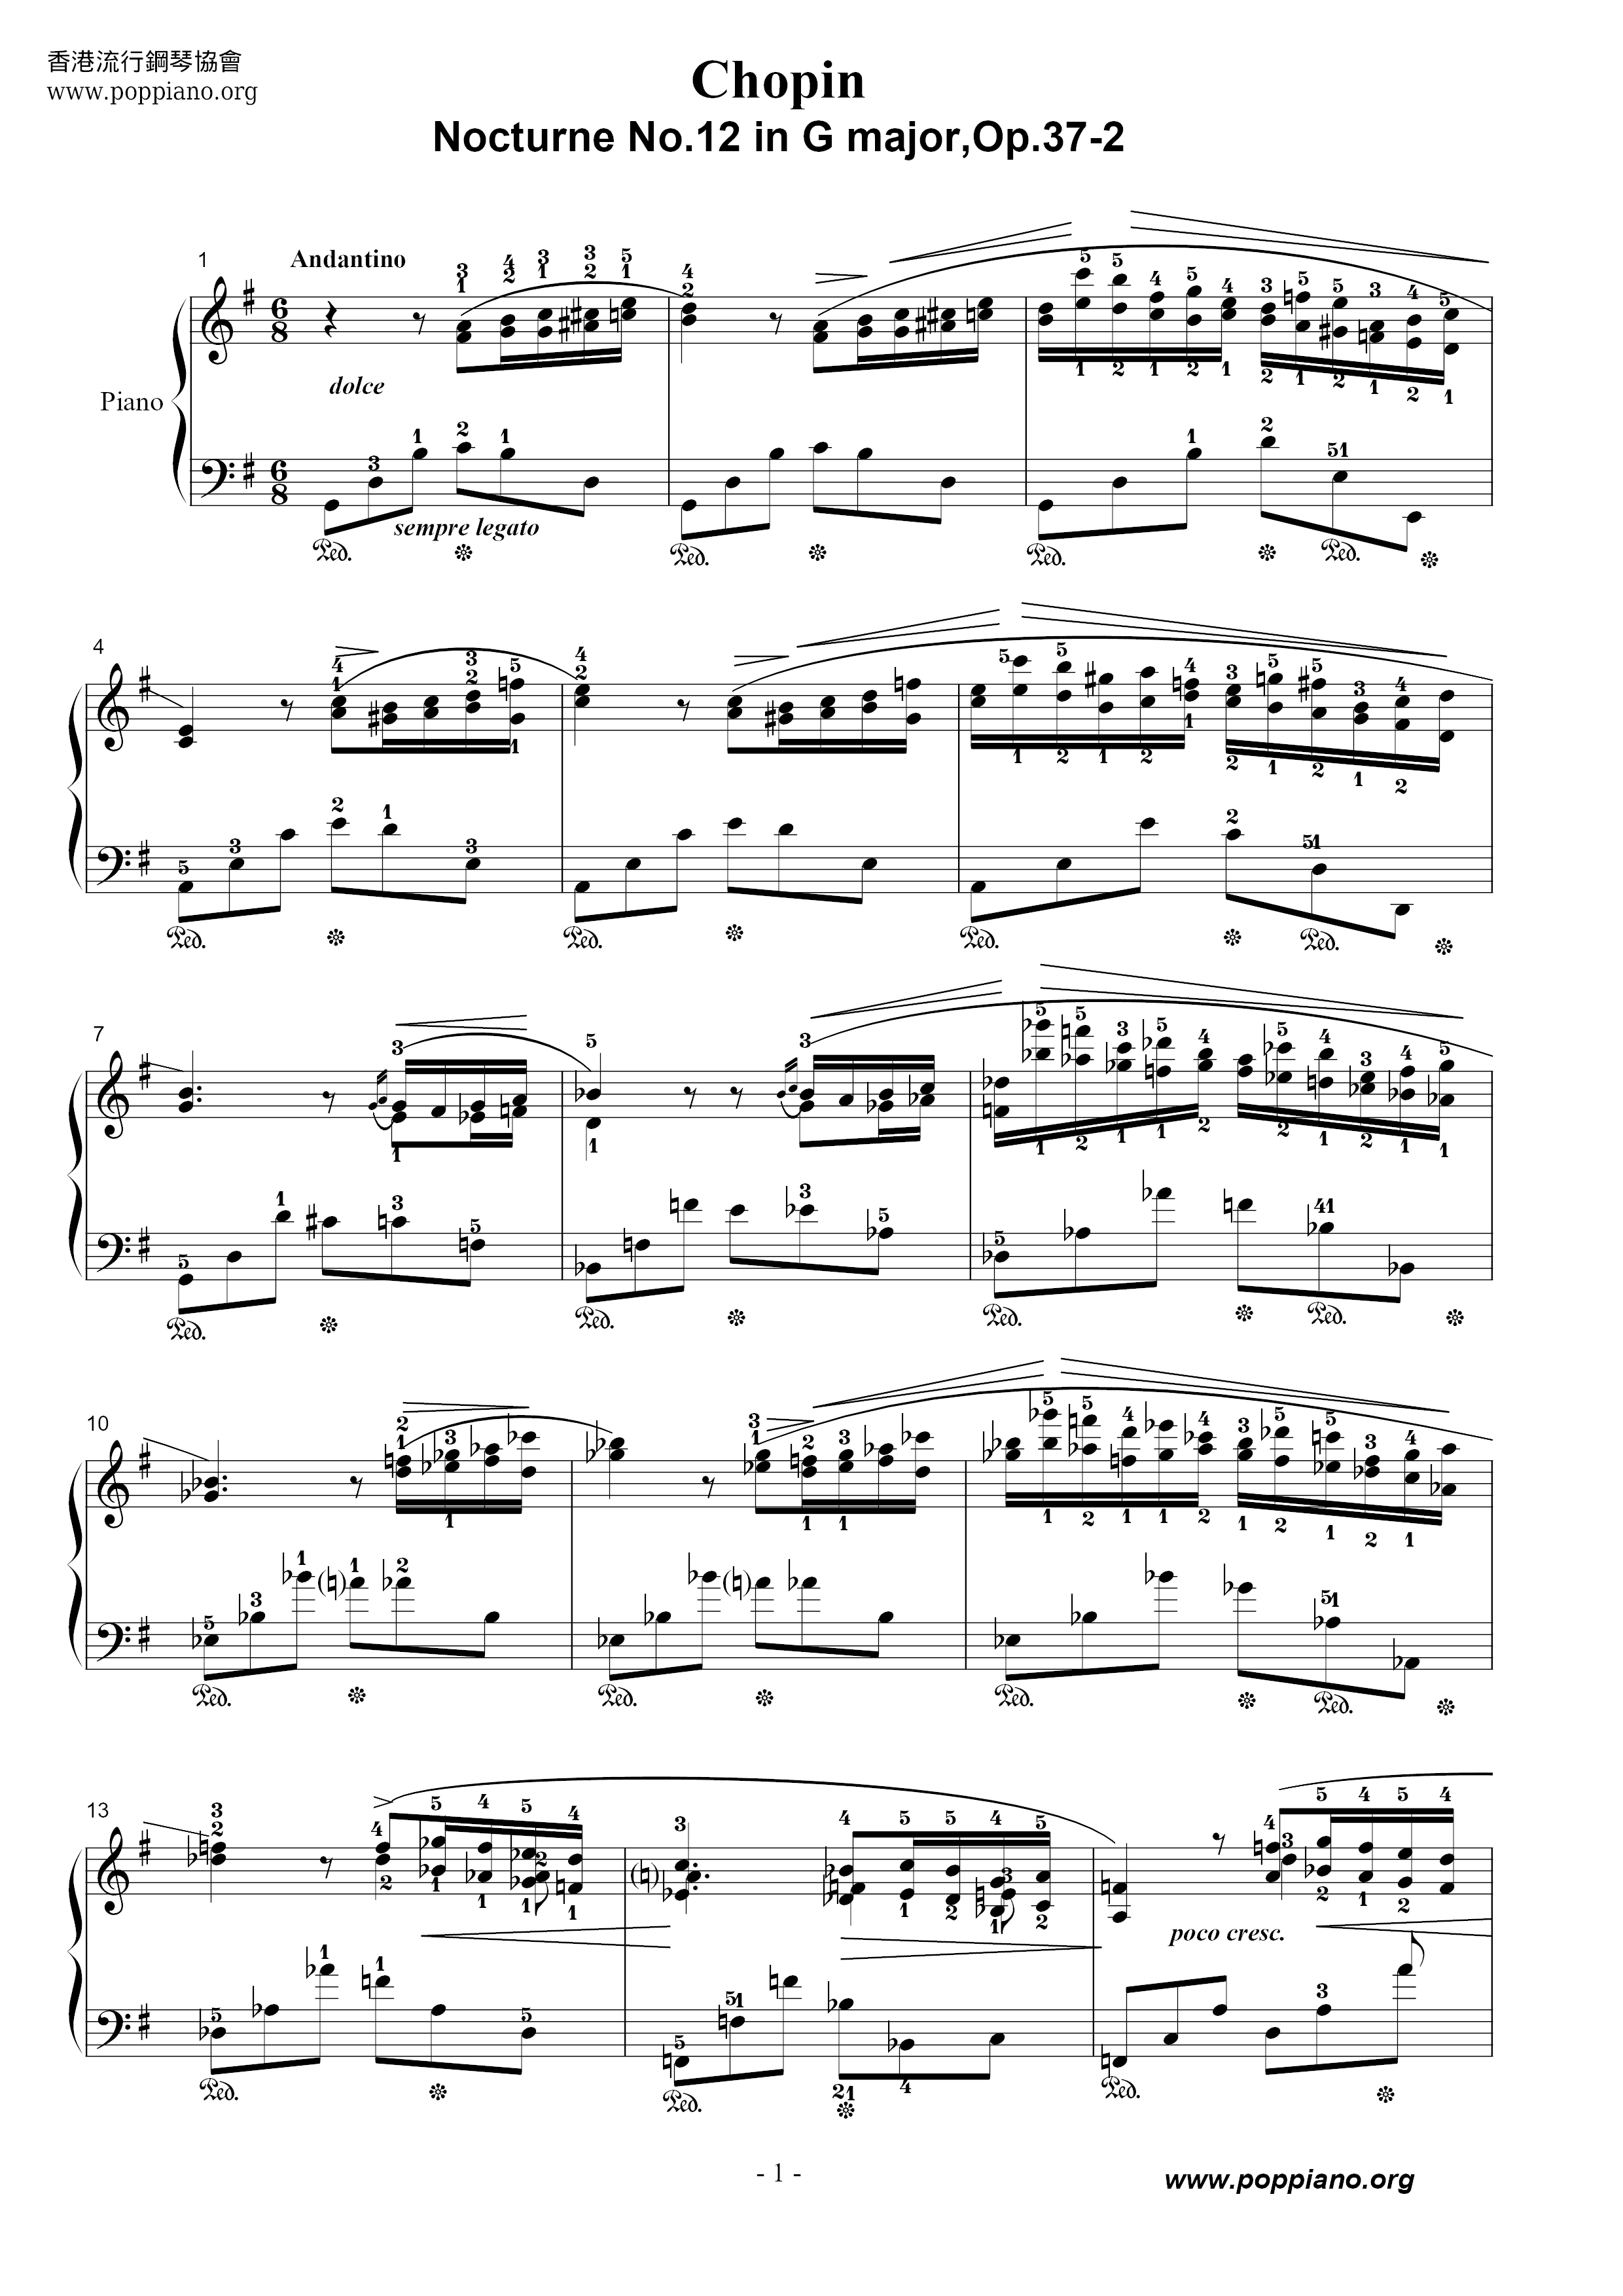 Nocturne No. 12 Score